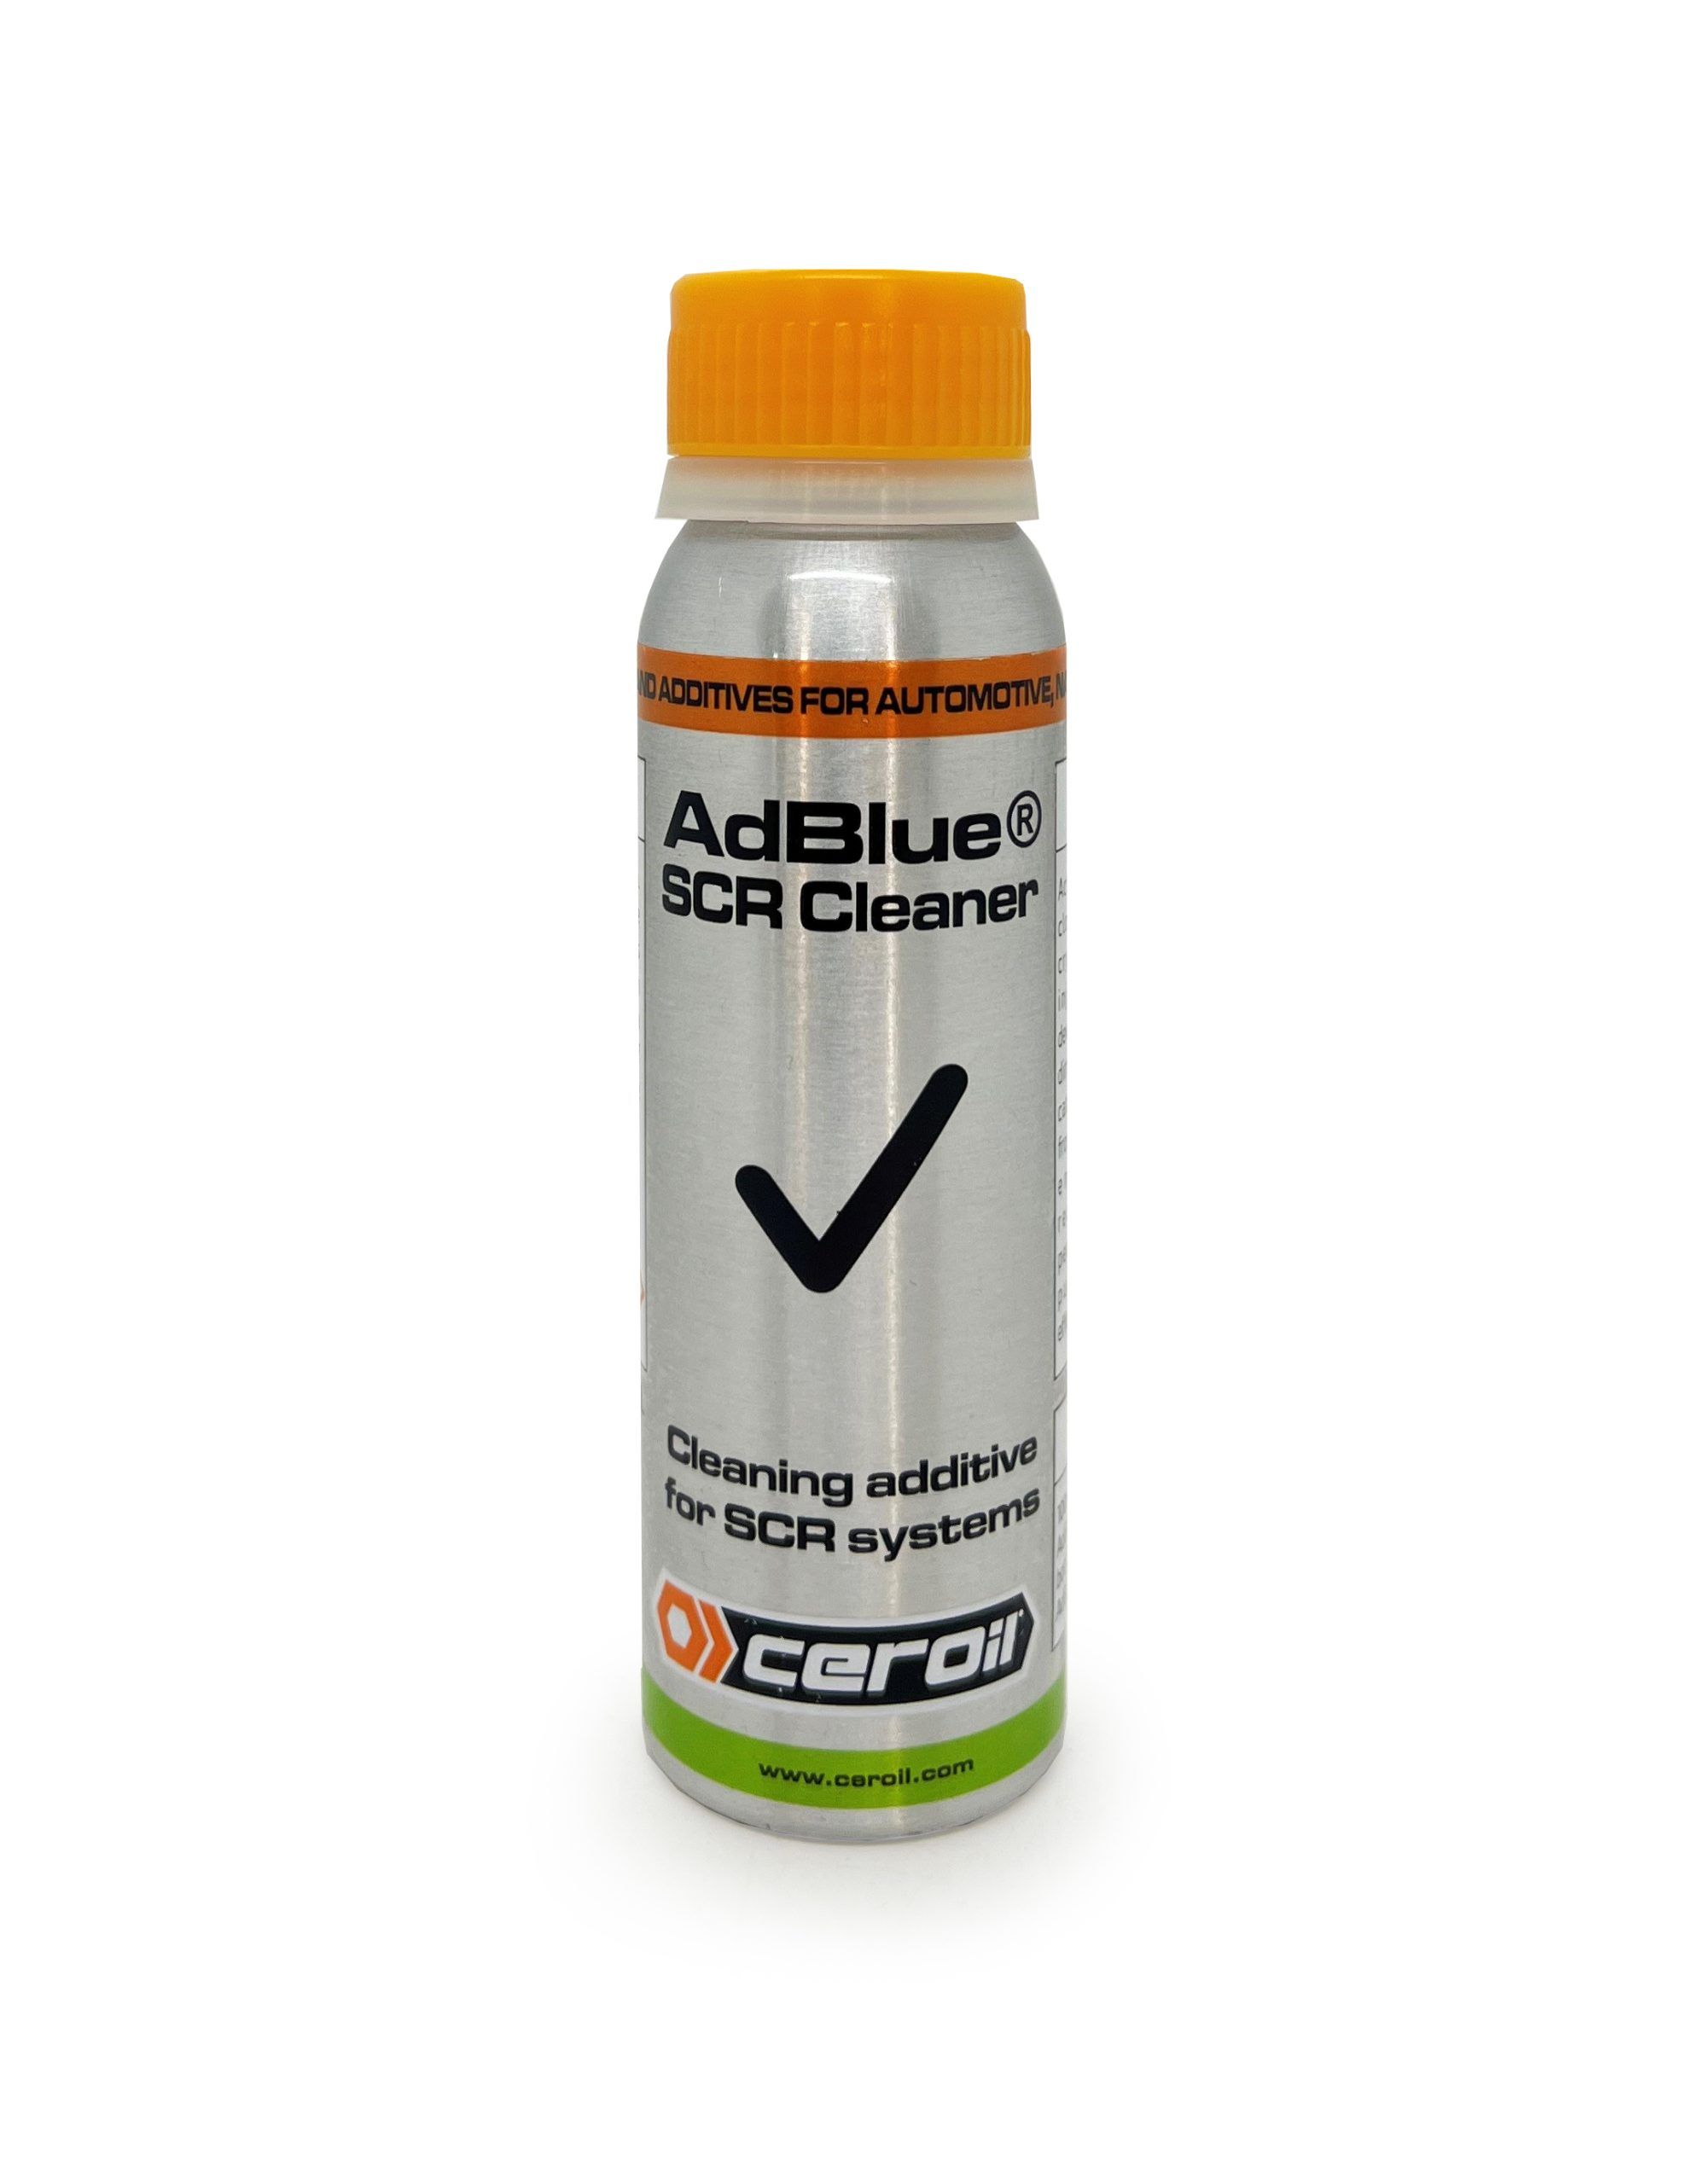 Aditivo anticristalizante Adblue 1 LT. - Adicar - Tratamiento y productos  de limpieza para automoción